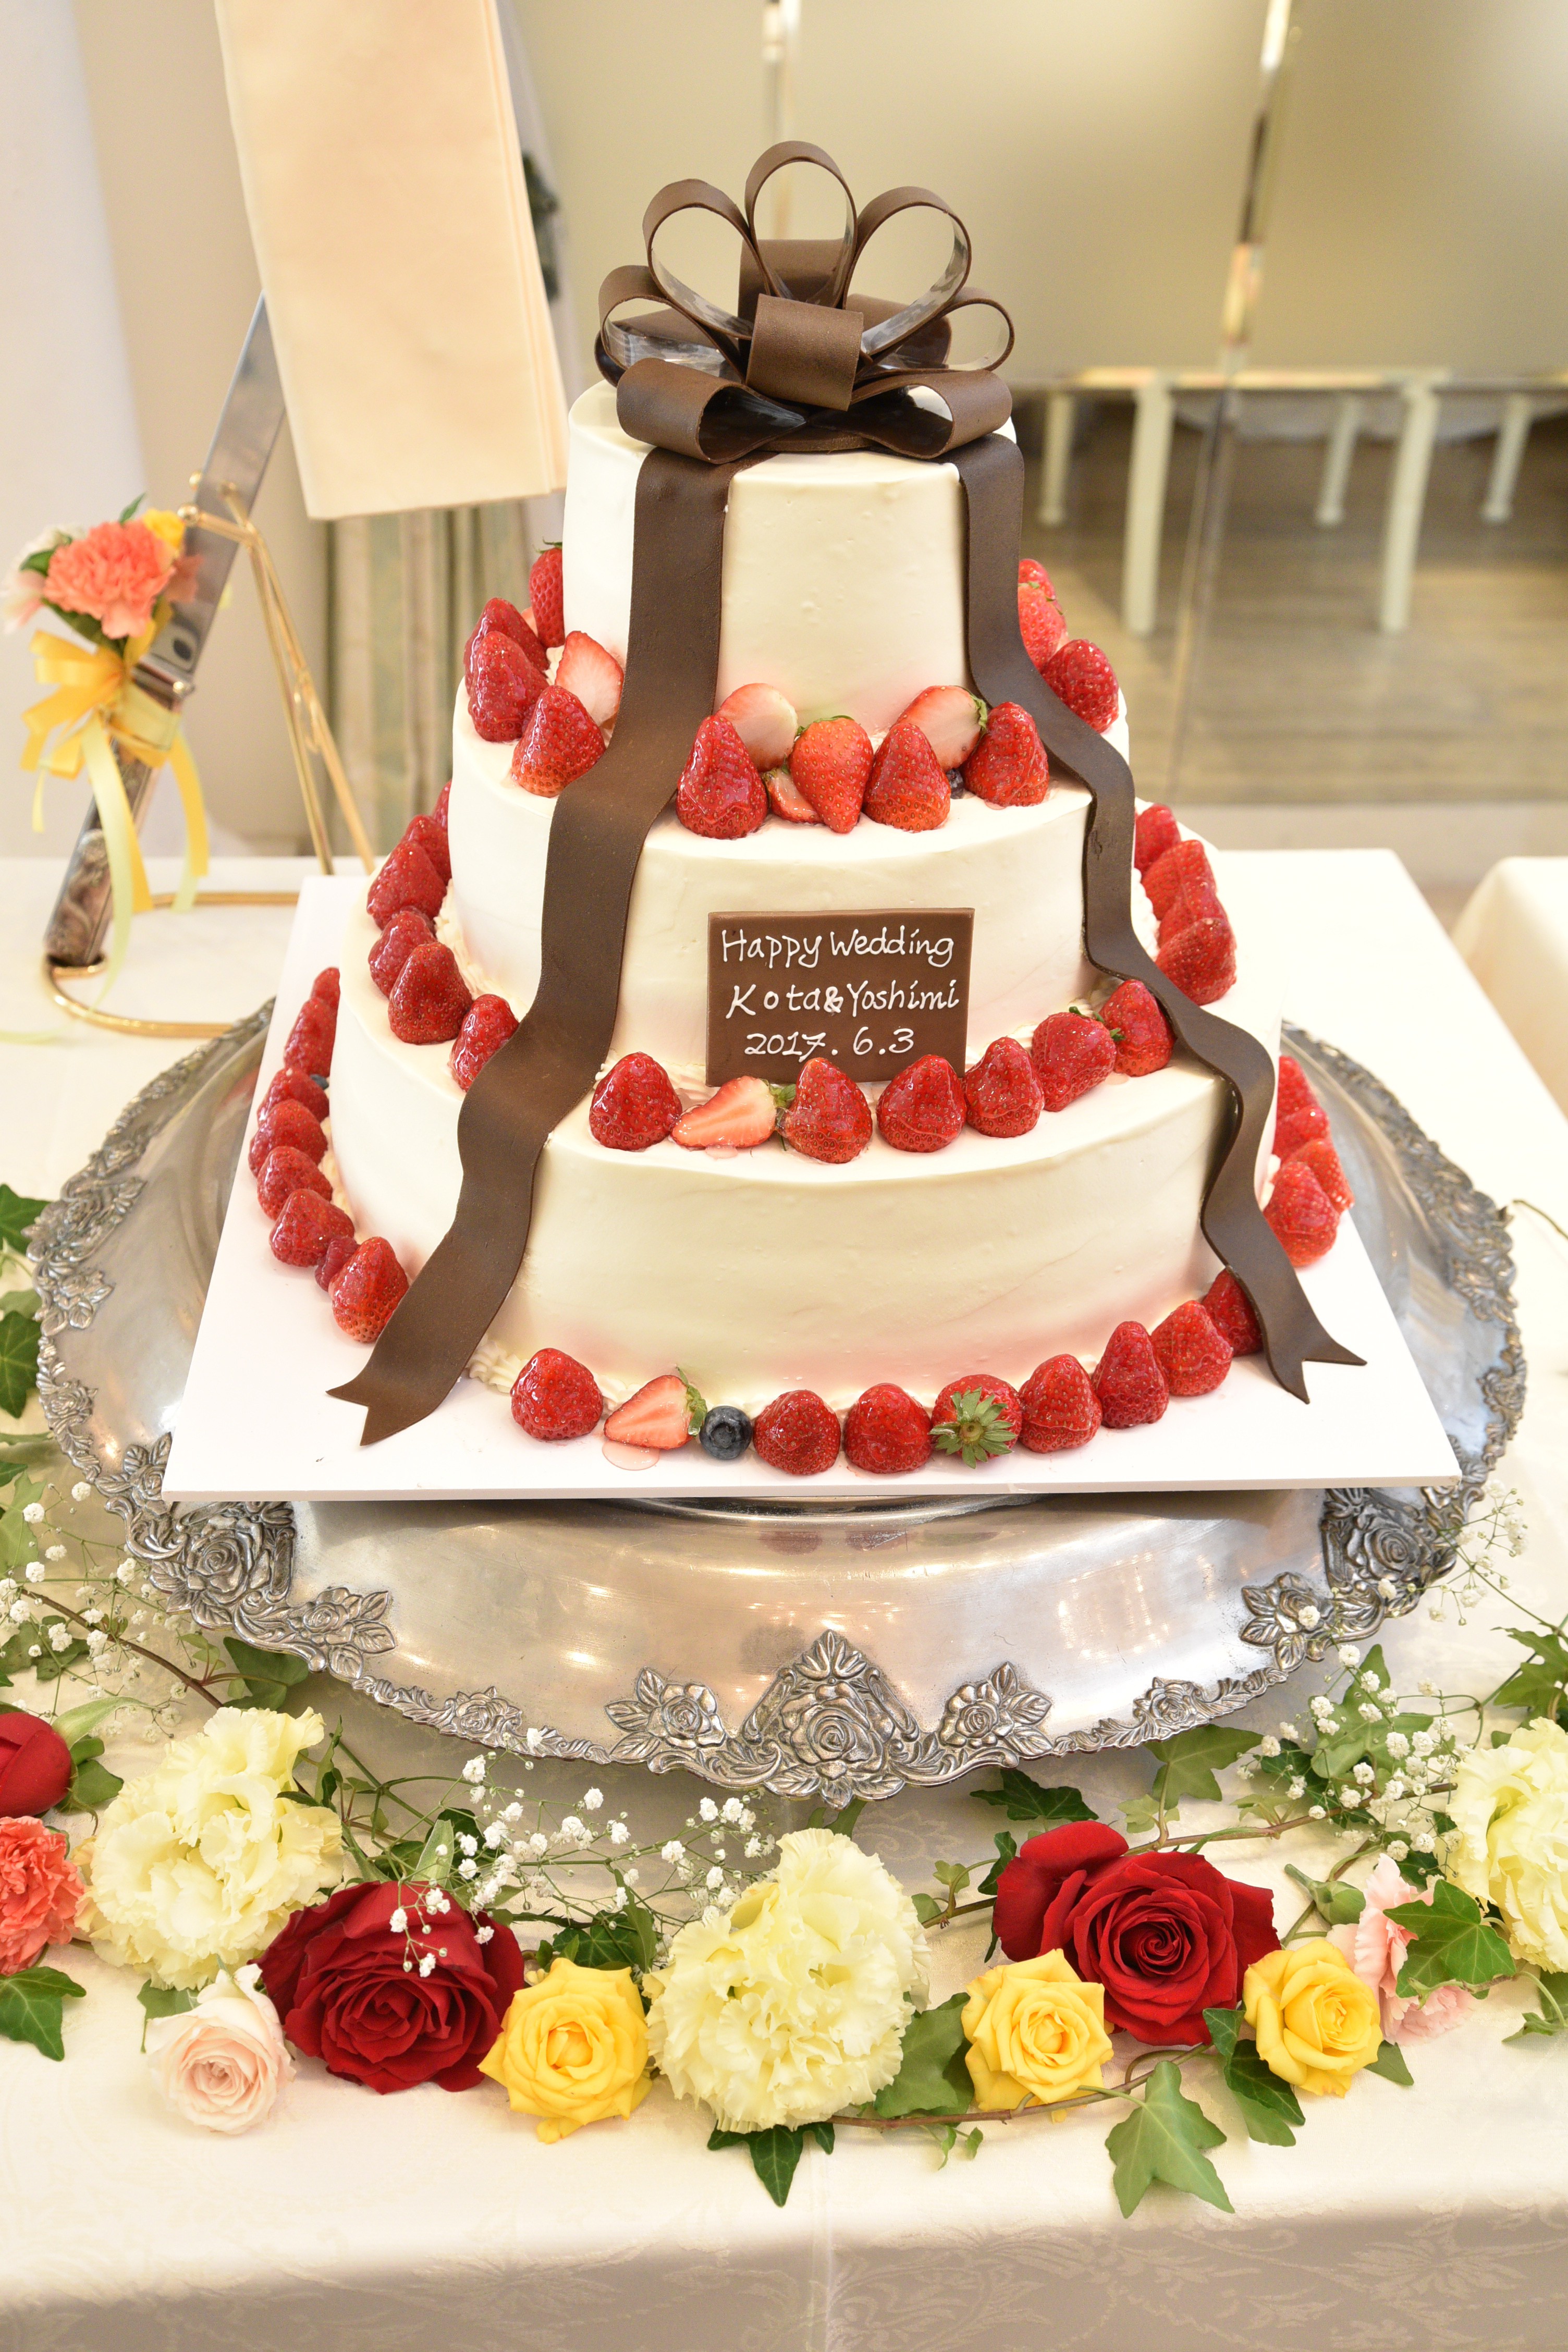 ウェディングケーキ 愛知 三河安城の結婚式場 公式 フェリシアコート